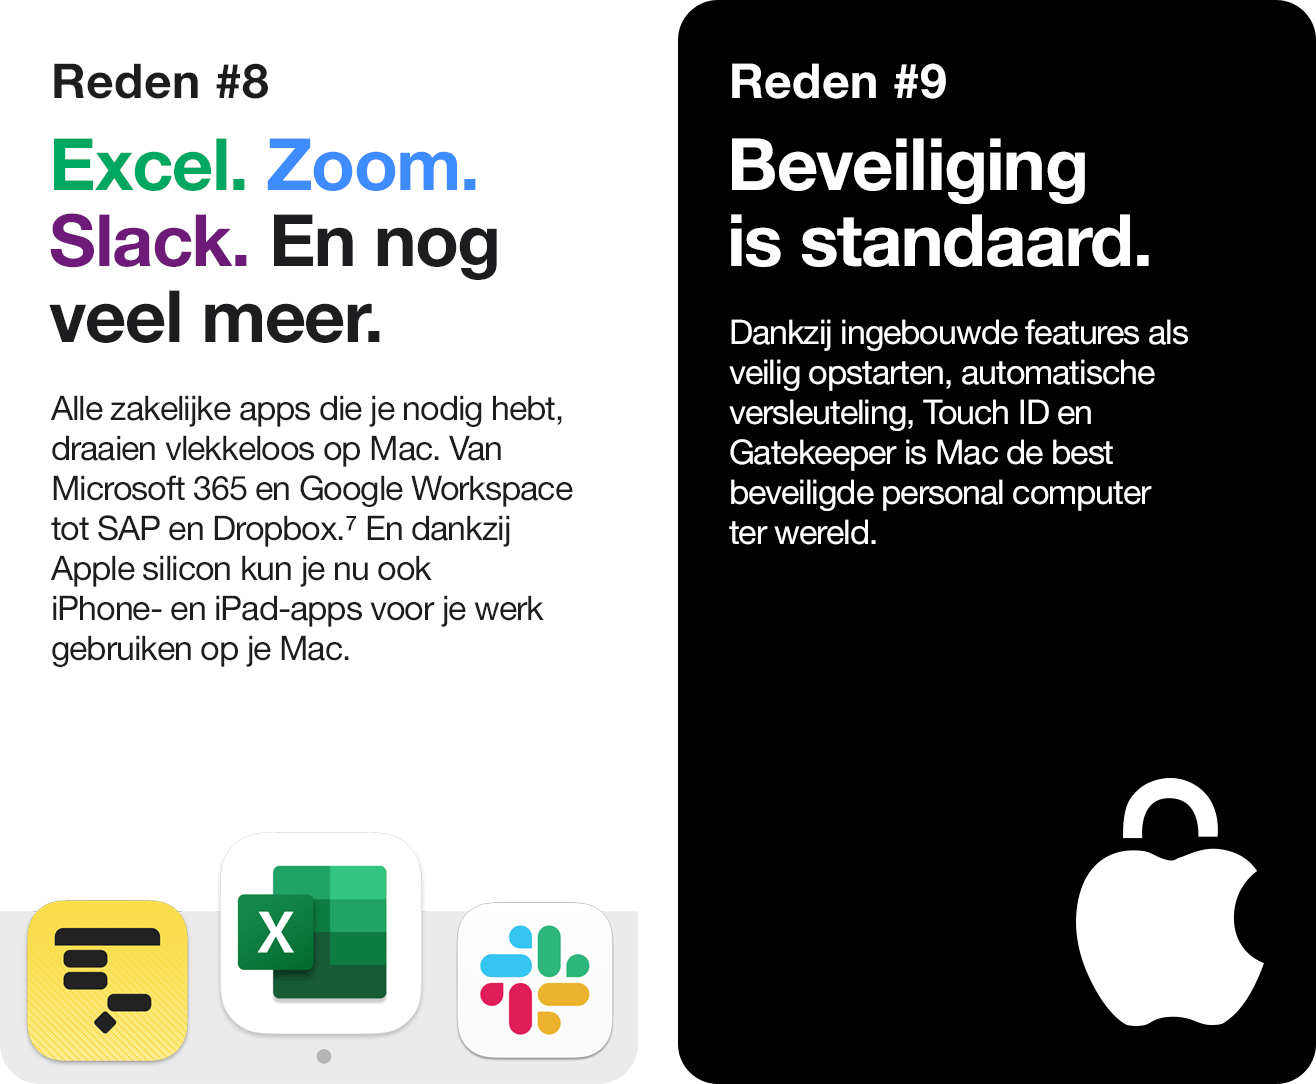 Apple Mac for work - Reden 8 en 9